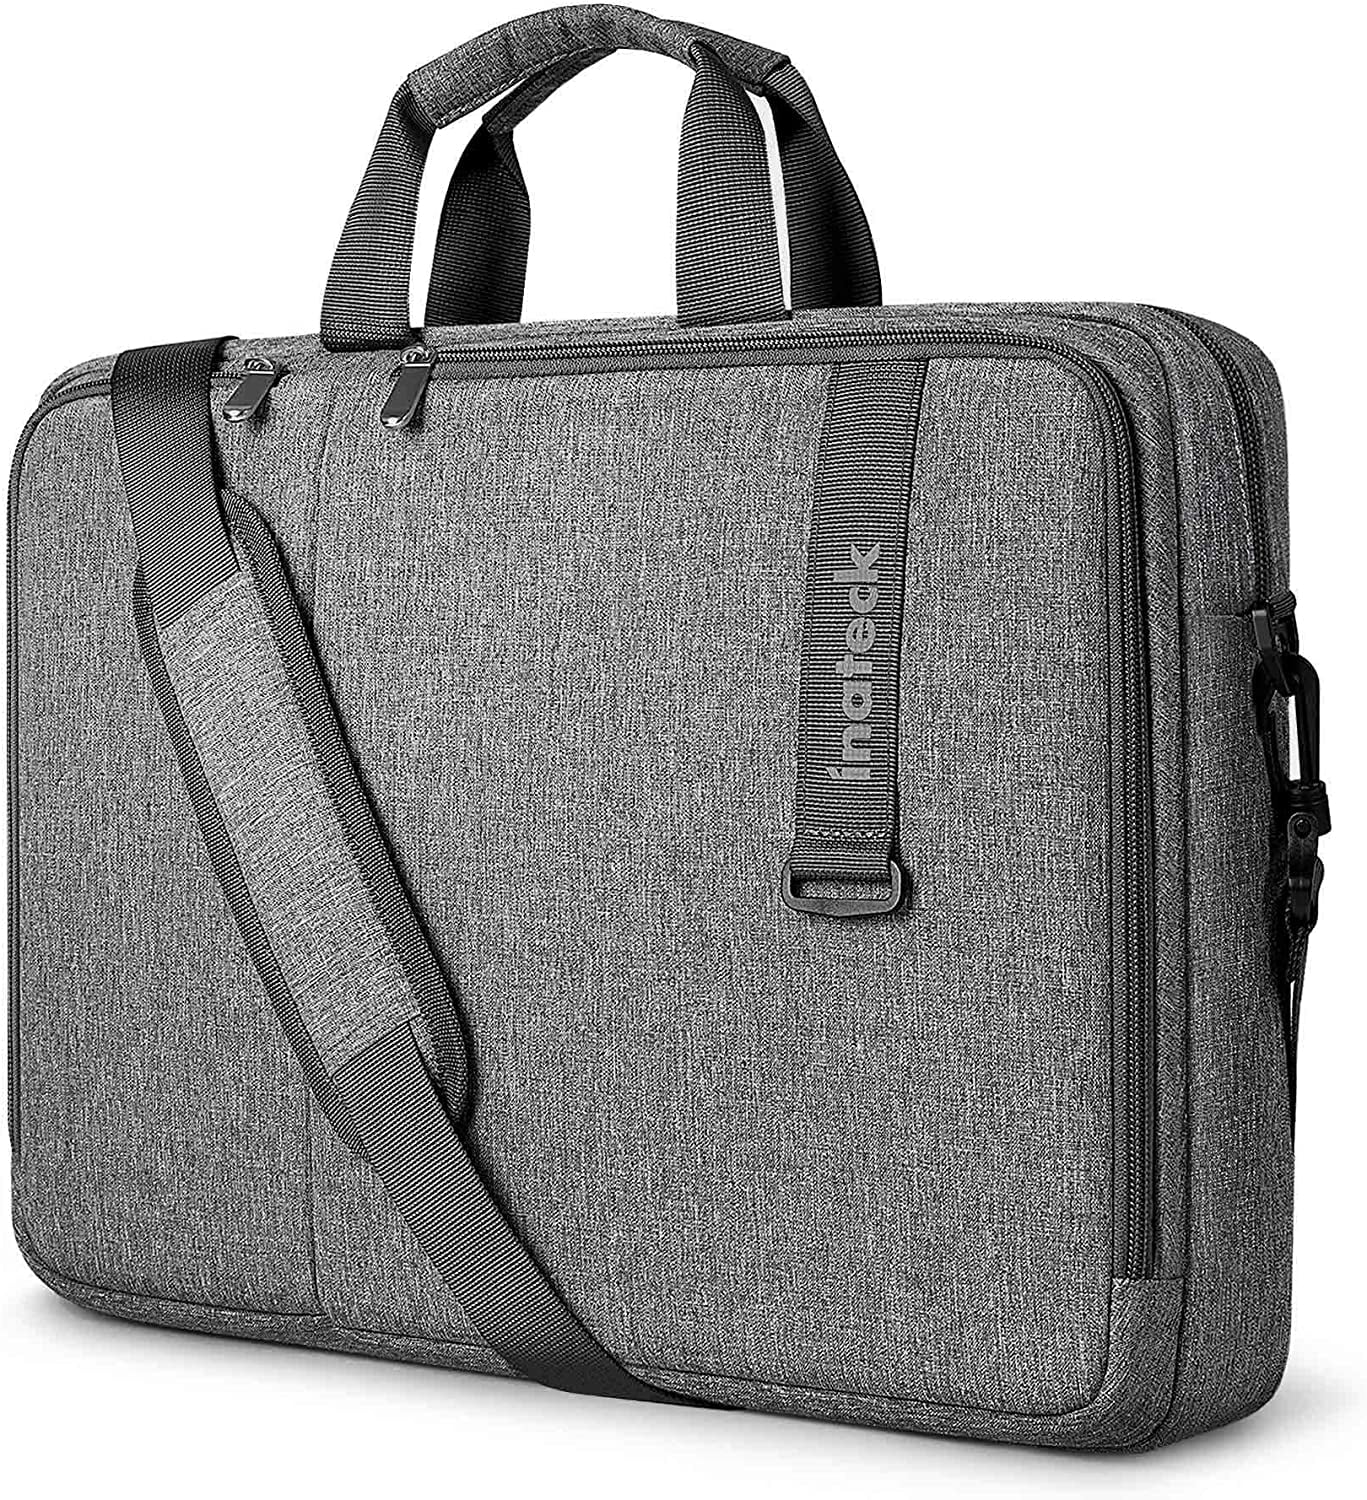 Inateck 15.6 inch Laptop Sleeve Shoulder Messenger Bag Handheld Case ...